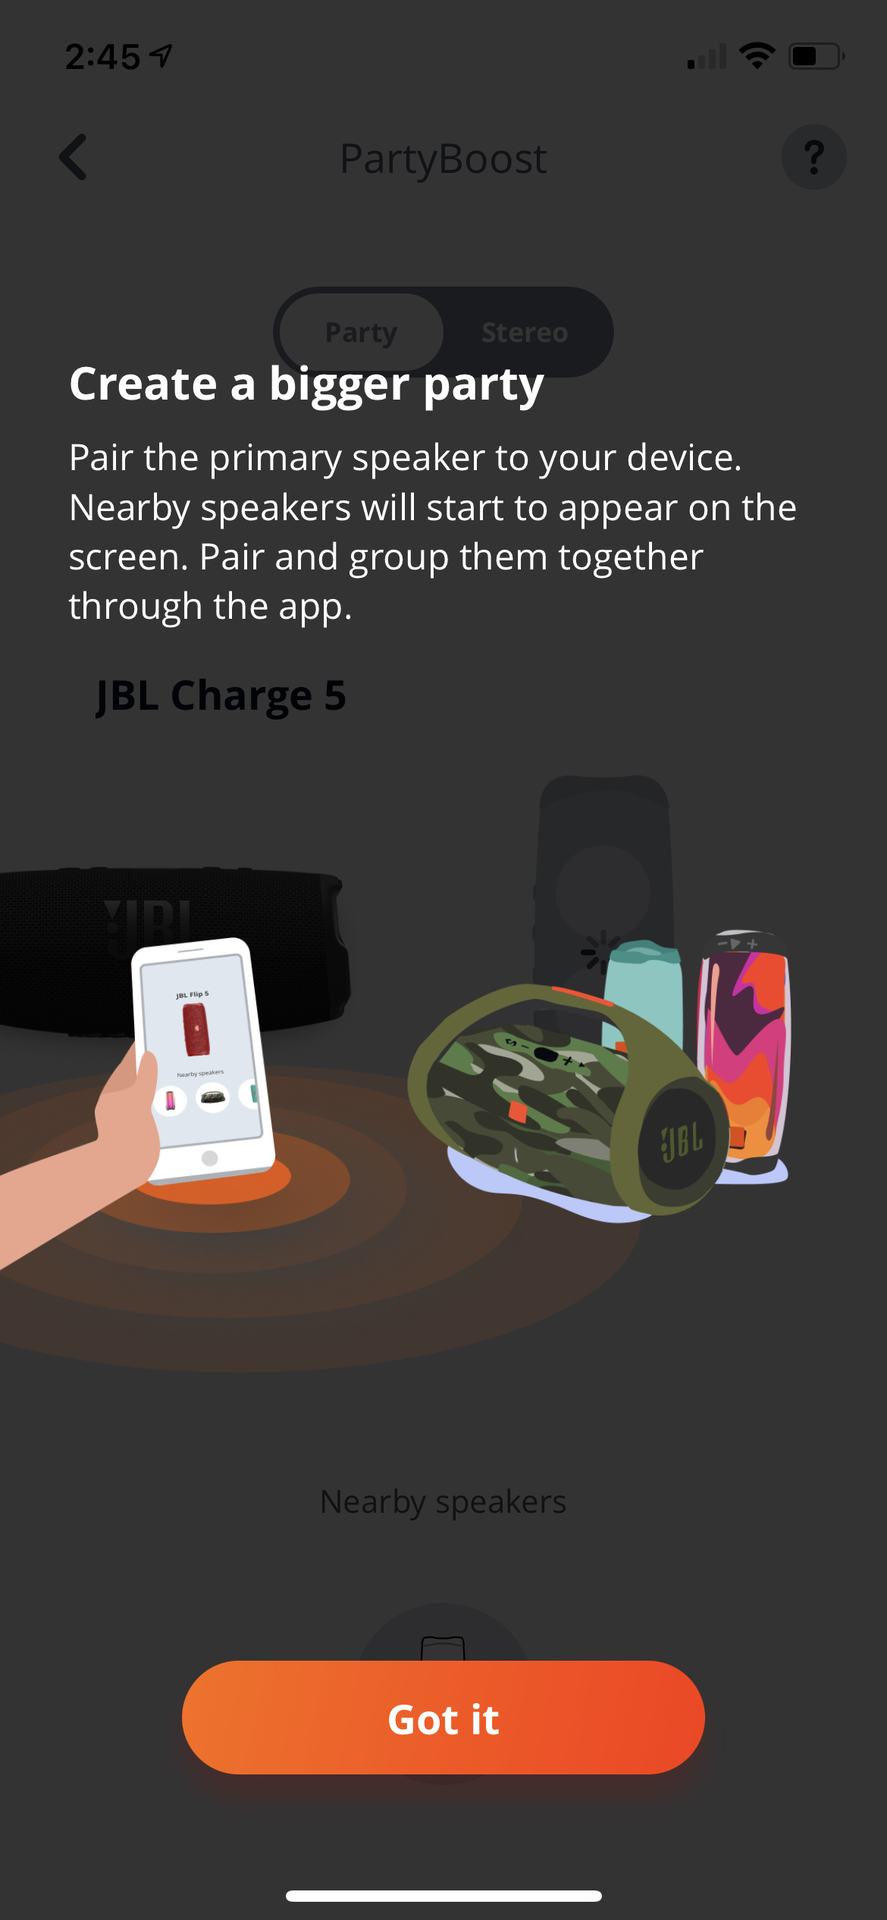 Captura de pantalla de la función PartyBoost de la aplicación JBL Connect.